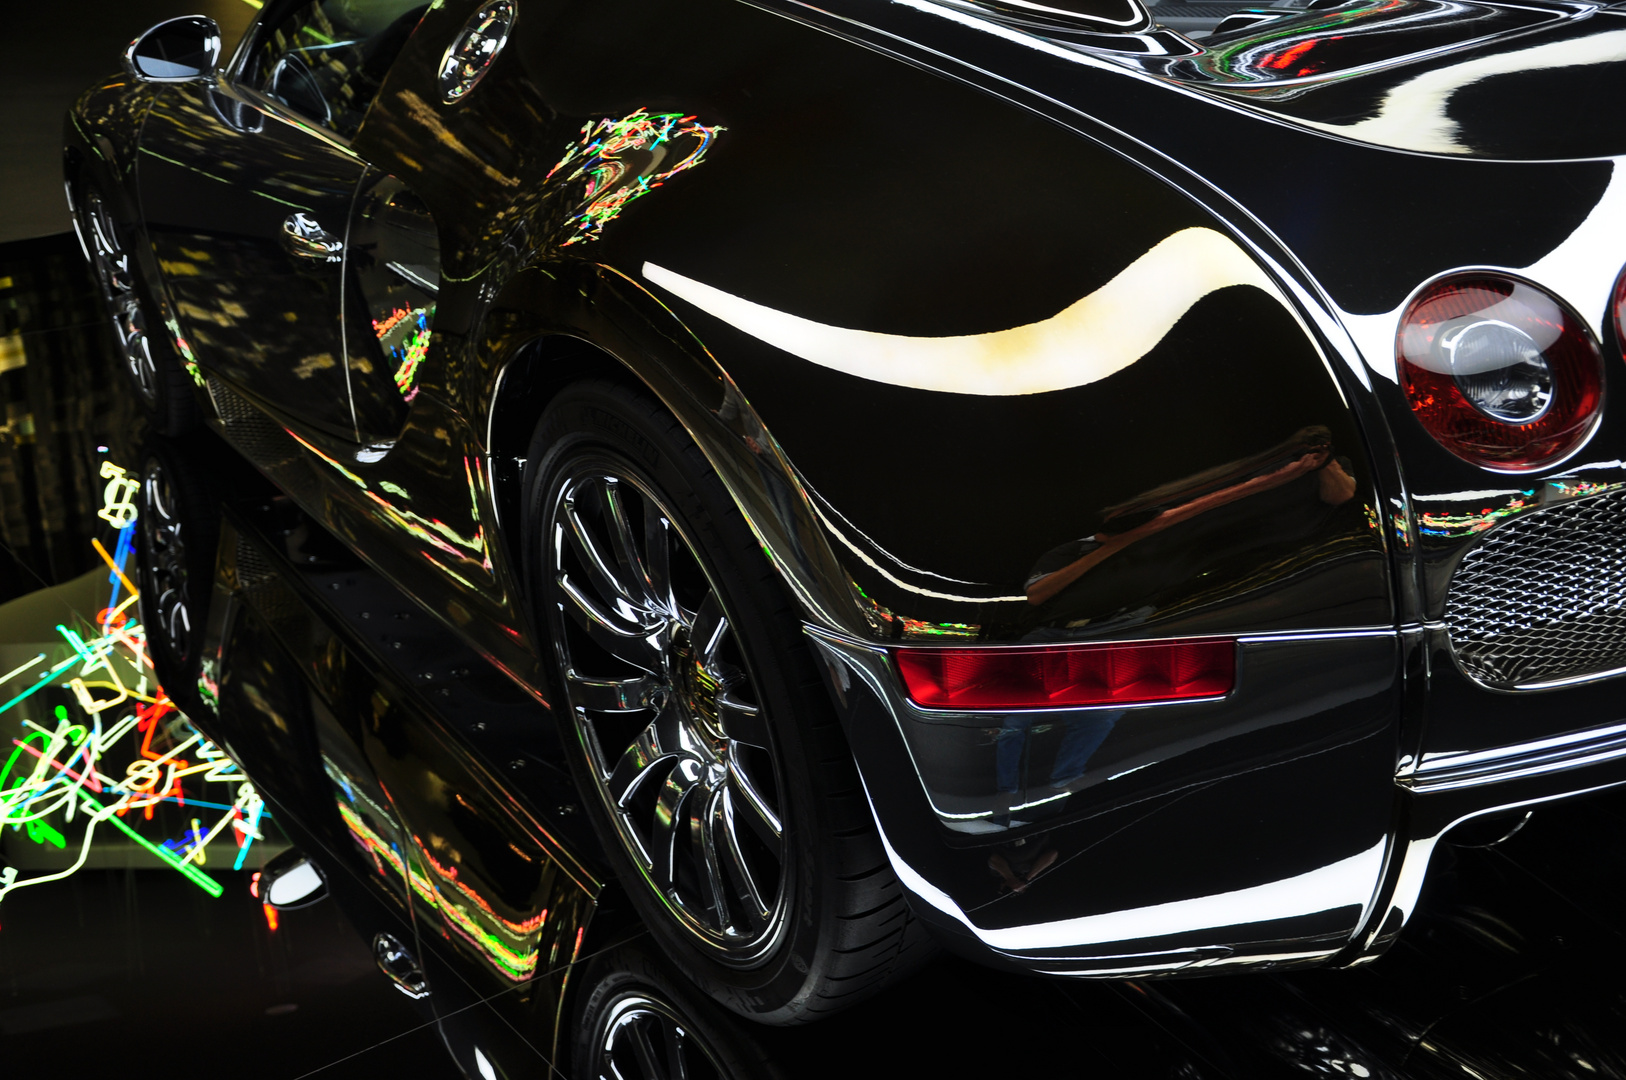 Bugatti Veyron in Chrome